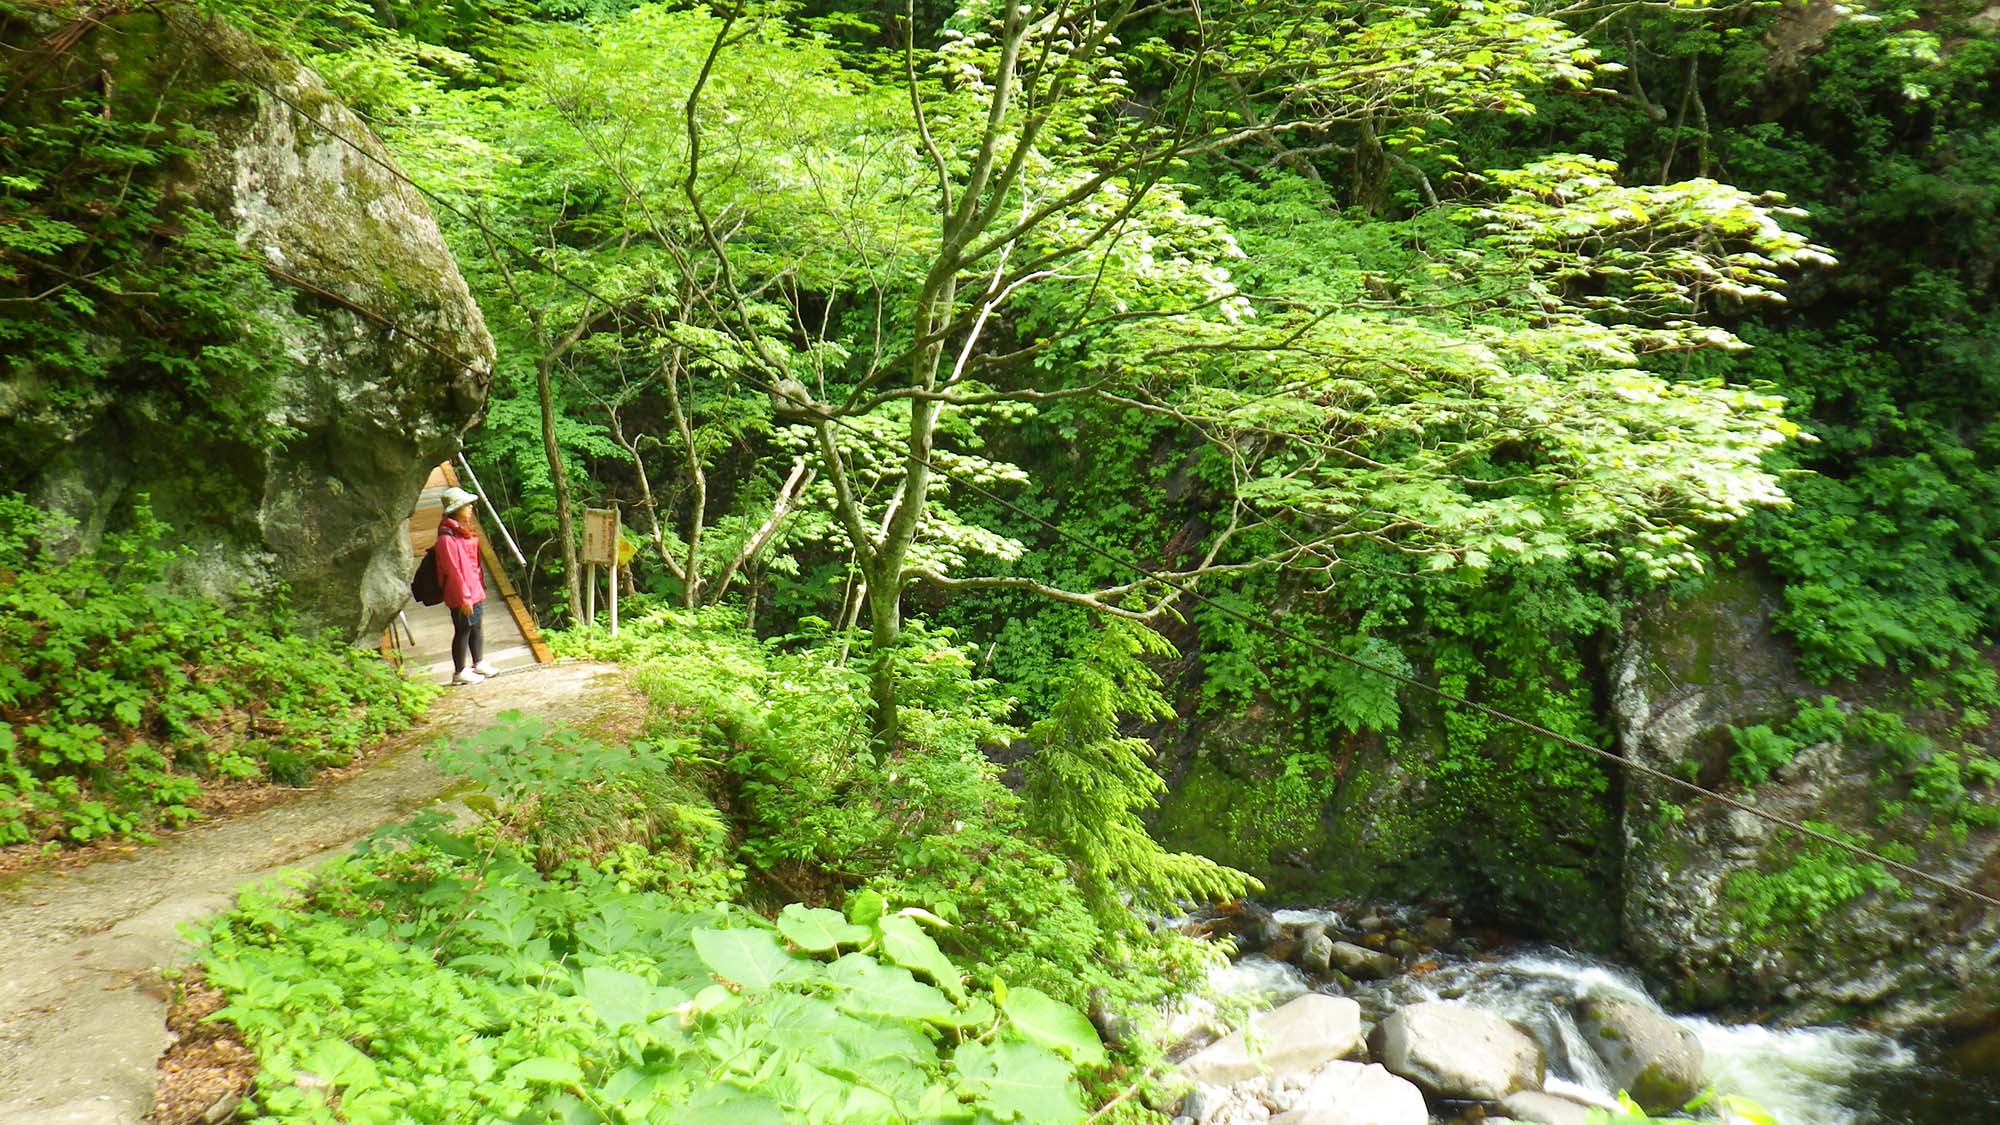 ・【宿へのトレッキング】緑溢れる山の風景と心地よい川の音を楽しめます